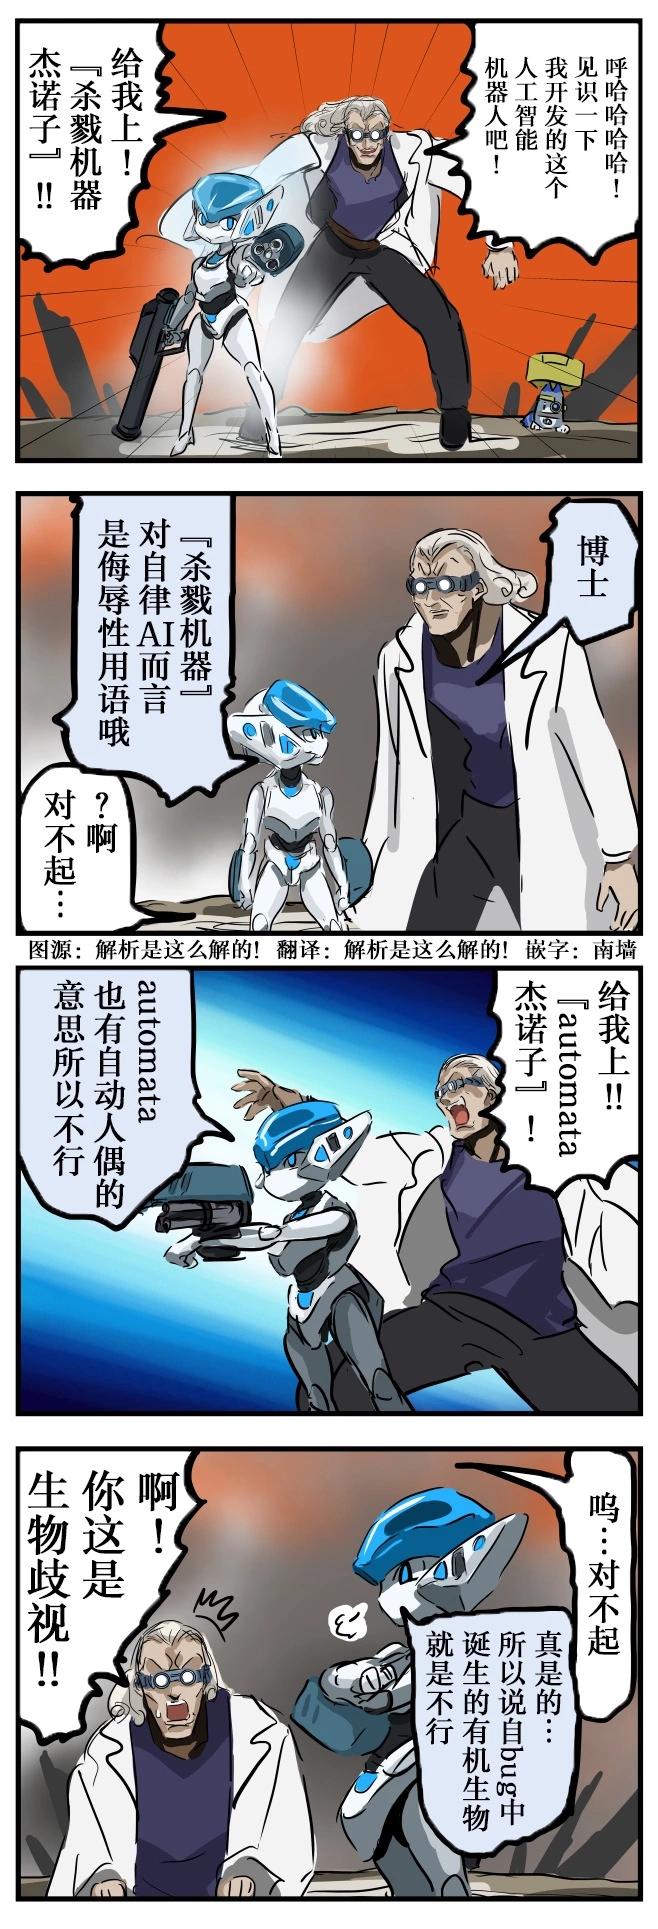 カコミスル老师四格合集 - 博士与机器人 - 1